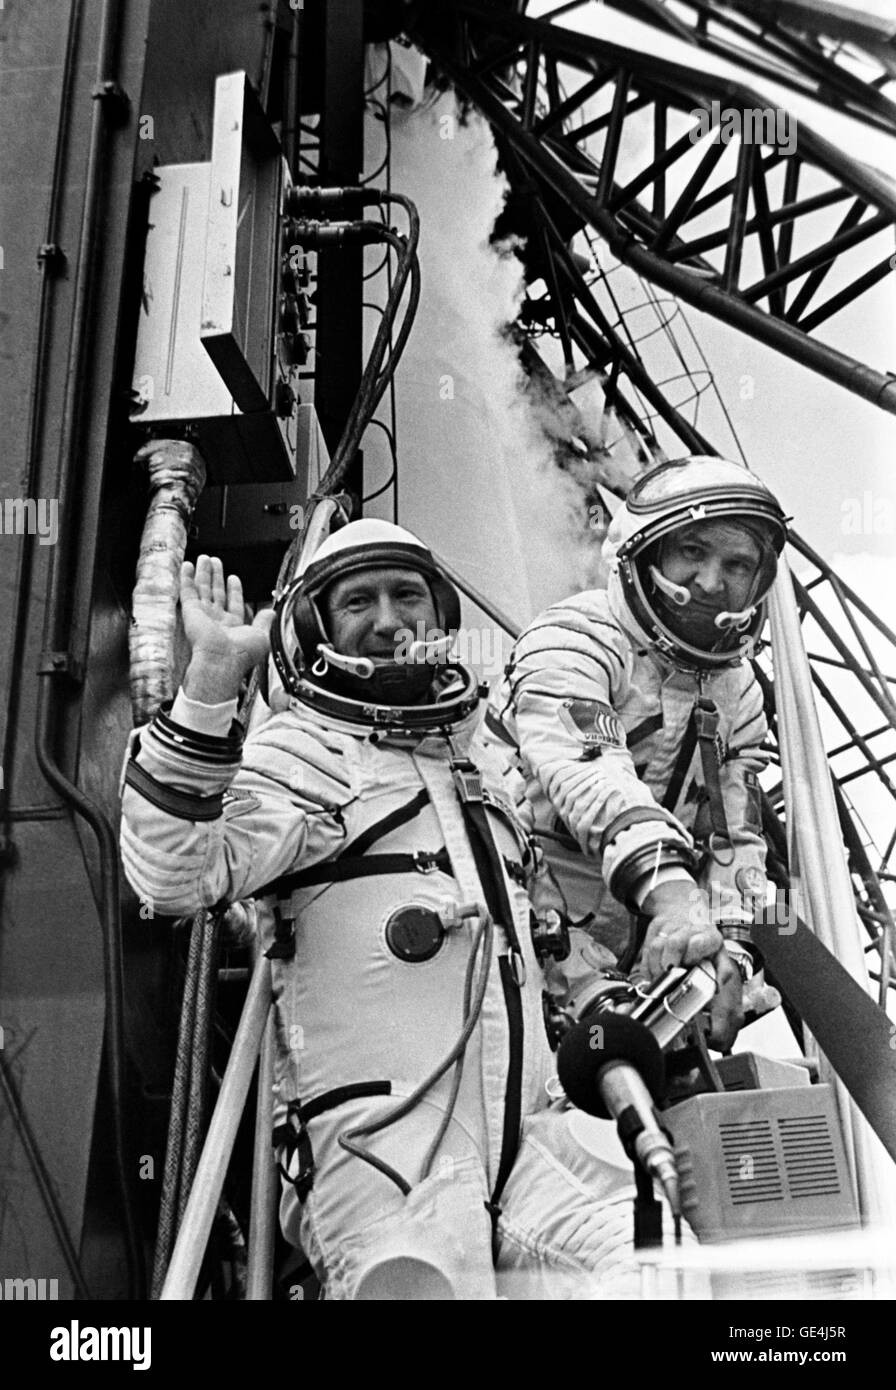 I due marinai sovietici per la Apollo-Soyuz Test Progetto missione sono fotografati a rampa di lancio presso il cosmodromo di Baikonur in Kazakistan la mattina dell'ASTP sovietica sollevarsi sulla luglio 15, 1975. Essi sono i cosmonauti Aleksey A. Leonov (sinistra), comandante; e Valeriy N. Kubasov, tecnico di volo. Il Soviet ASTP lancio ha preceduto la American ASTP Apollo il decollo da sette ore e mezza. L'Americano e la navicella spaziale sovietica era ormeggiata in orbita intorno alla terra per un totale di circa 47 ore su luglio 17-19, 1975. Immagine #: S75-32343 Data: 15 Luglio 1975 Foto Stock